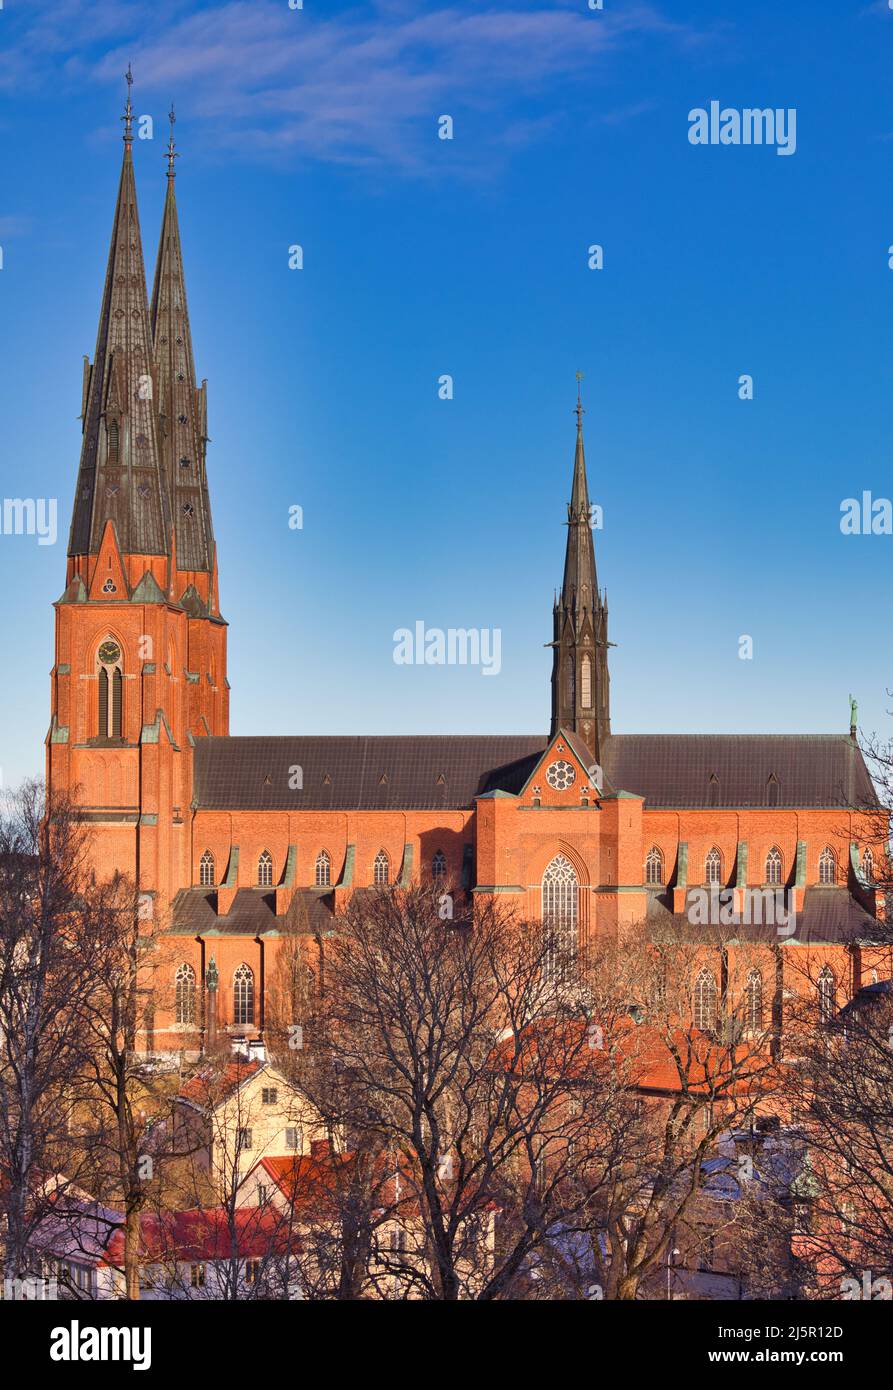 Agujas del gótico francés del siglo 13th Catedral de Uppsala (Uppsala Domkyrka) La más alta de Escandinavia, Uppsala, Uppland, Suecia Foto de stock